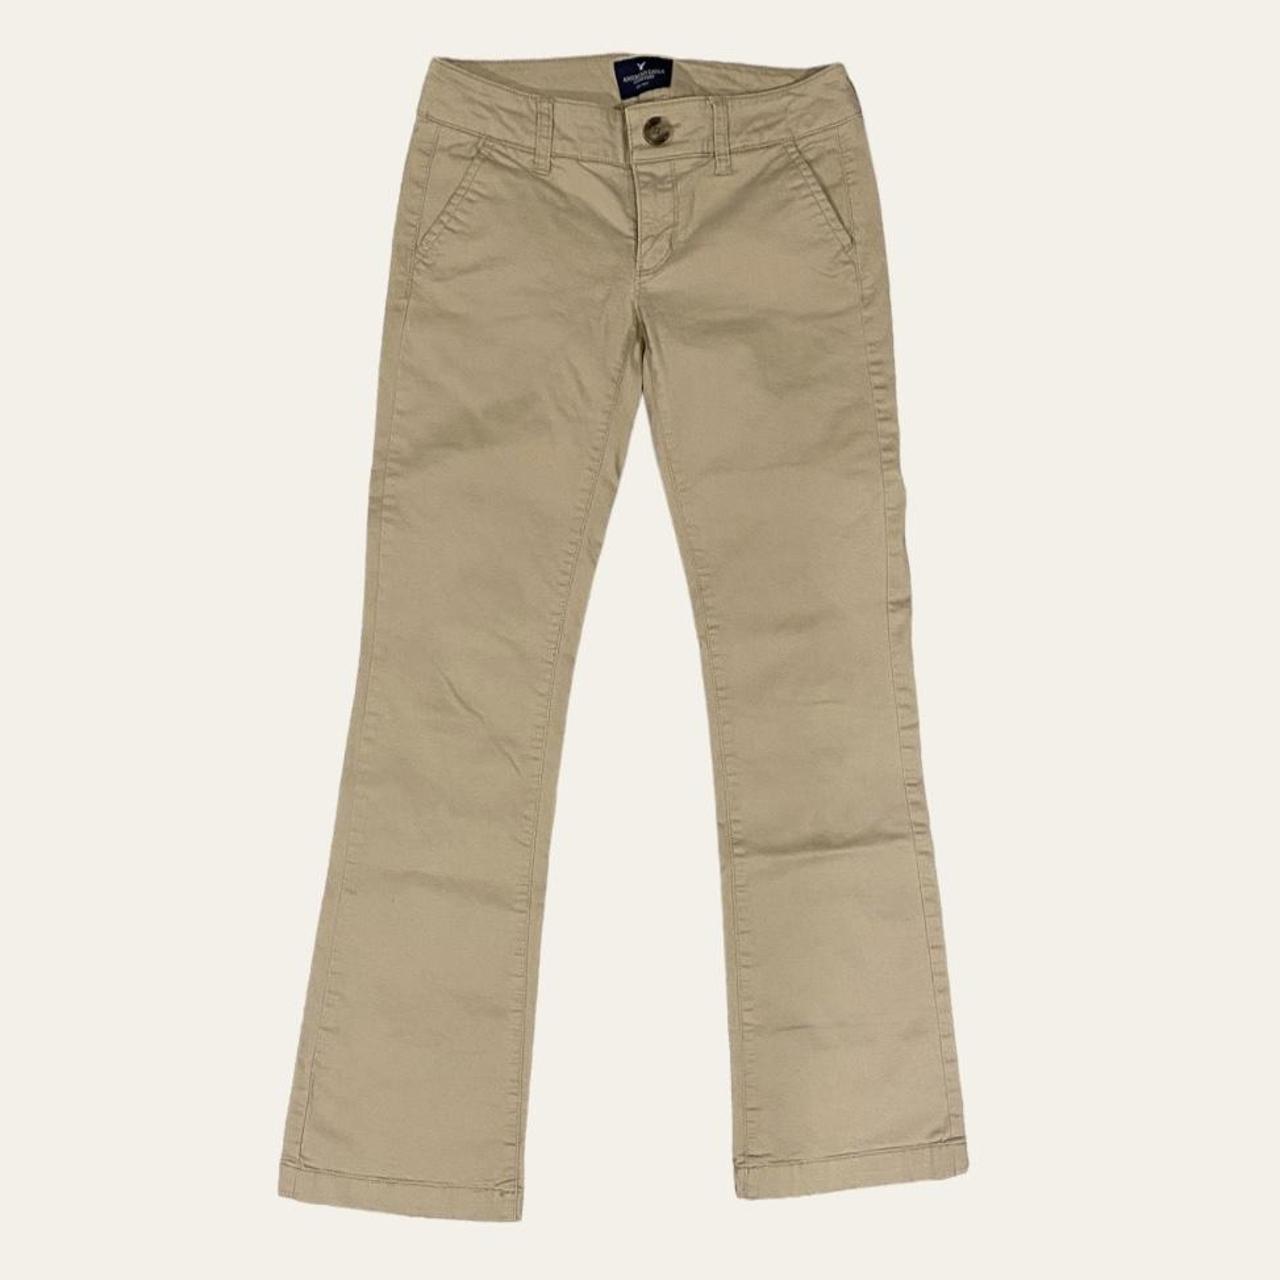 Pants Chinos & Khakis By Loft Size: 2